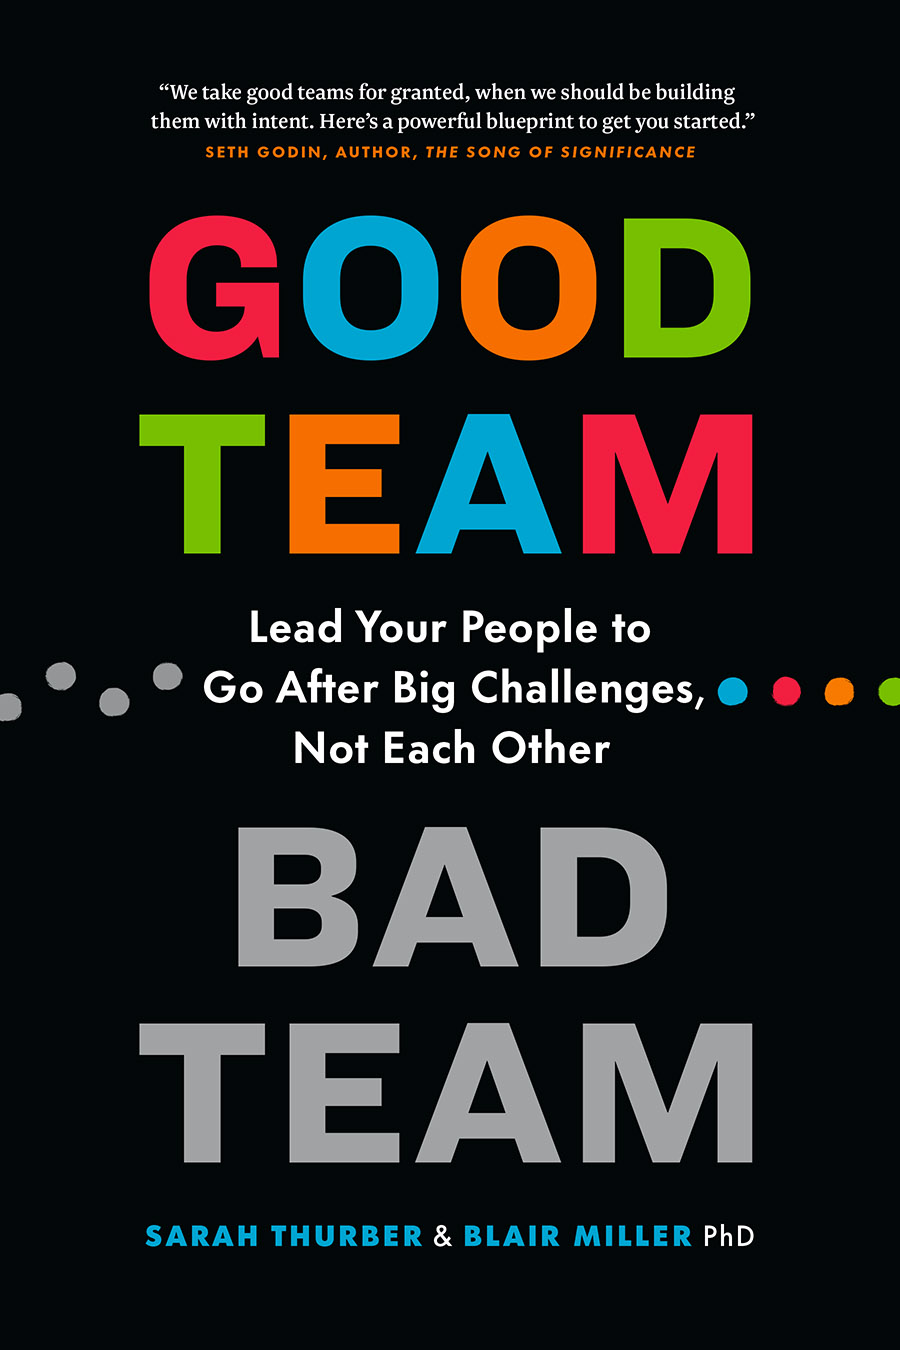 Good Team, Bad Team by Sarah Thurber and Blair Miller, PhD